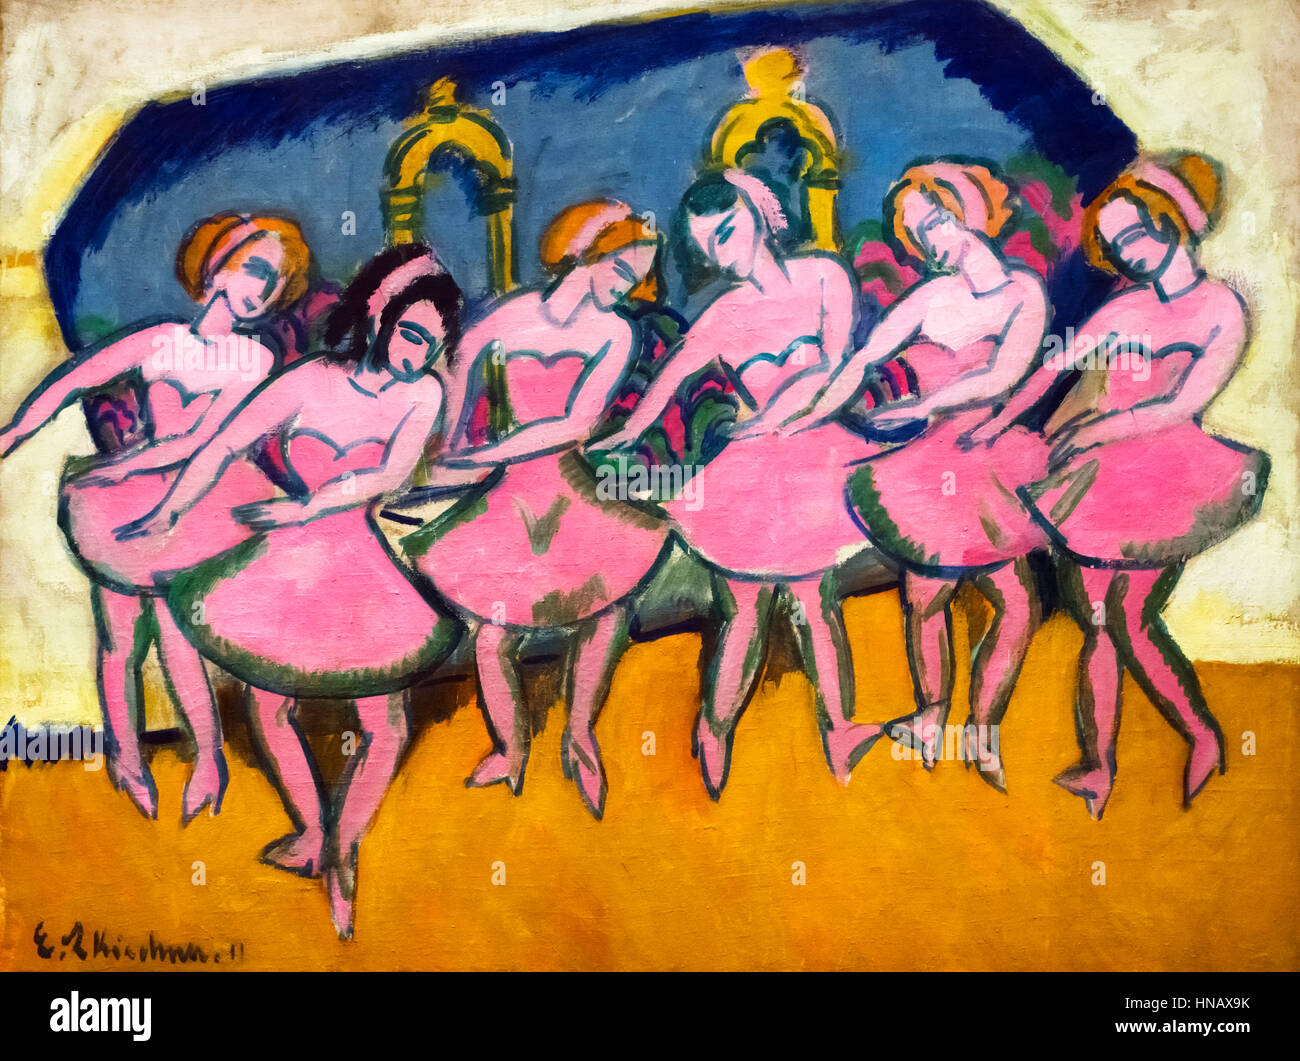 Kirchner, la peinture expressionniste. Danseurs 'Six' par Ernst Ludwig Kirchner (1880-1938), huile sur toile, 1911. Banque D'Images